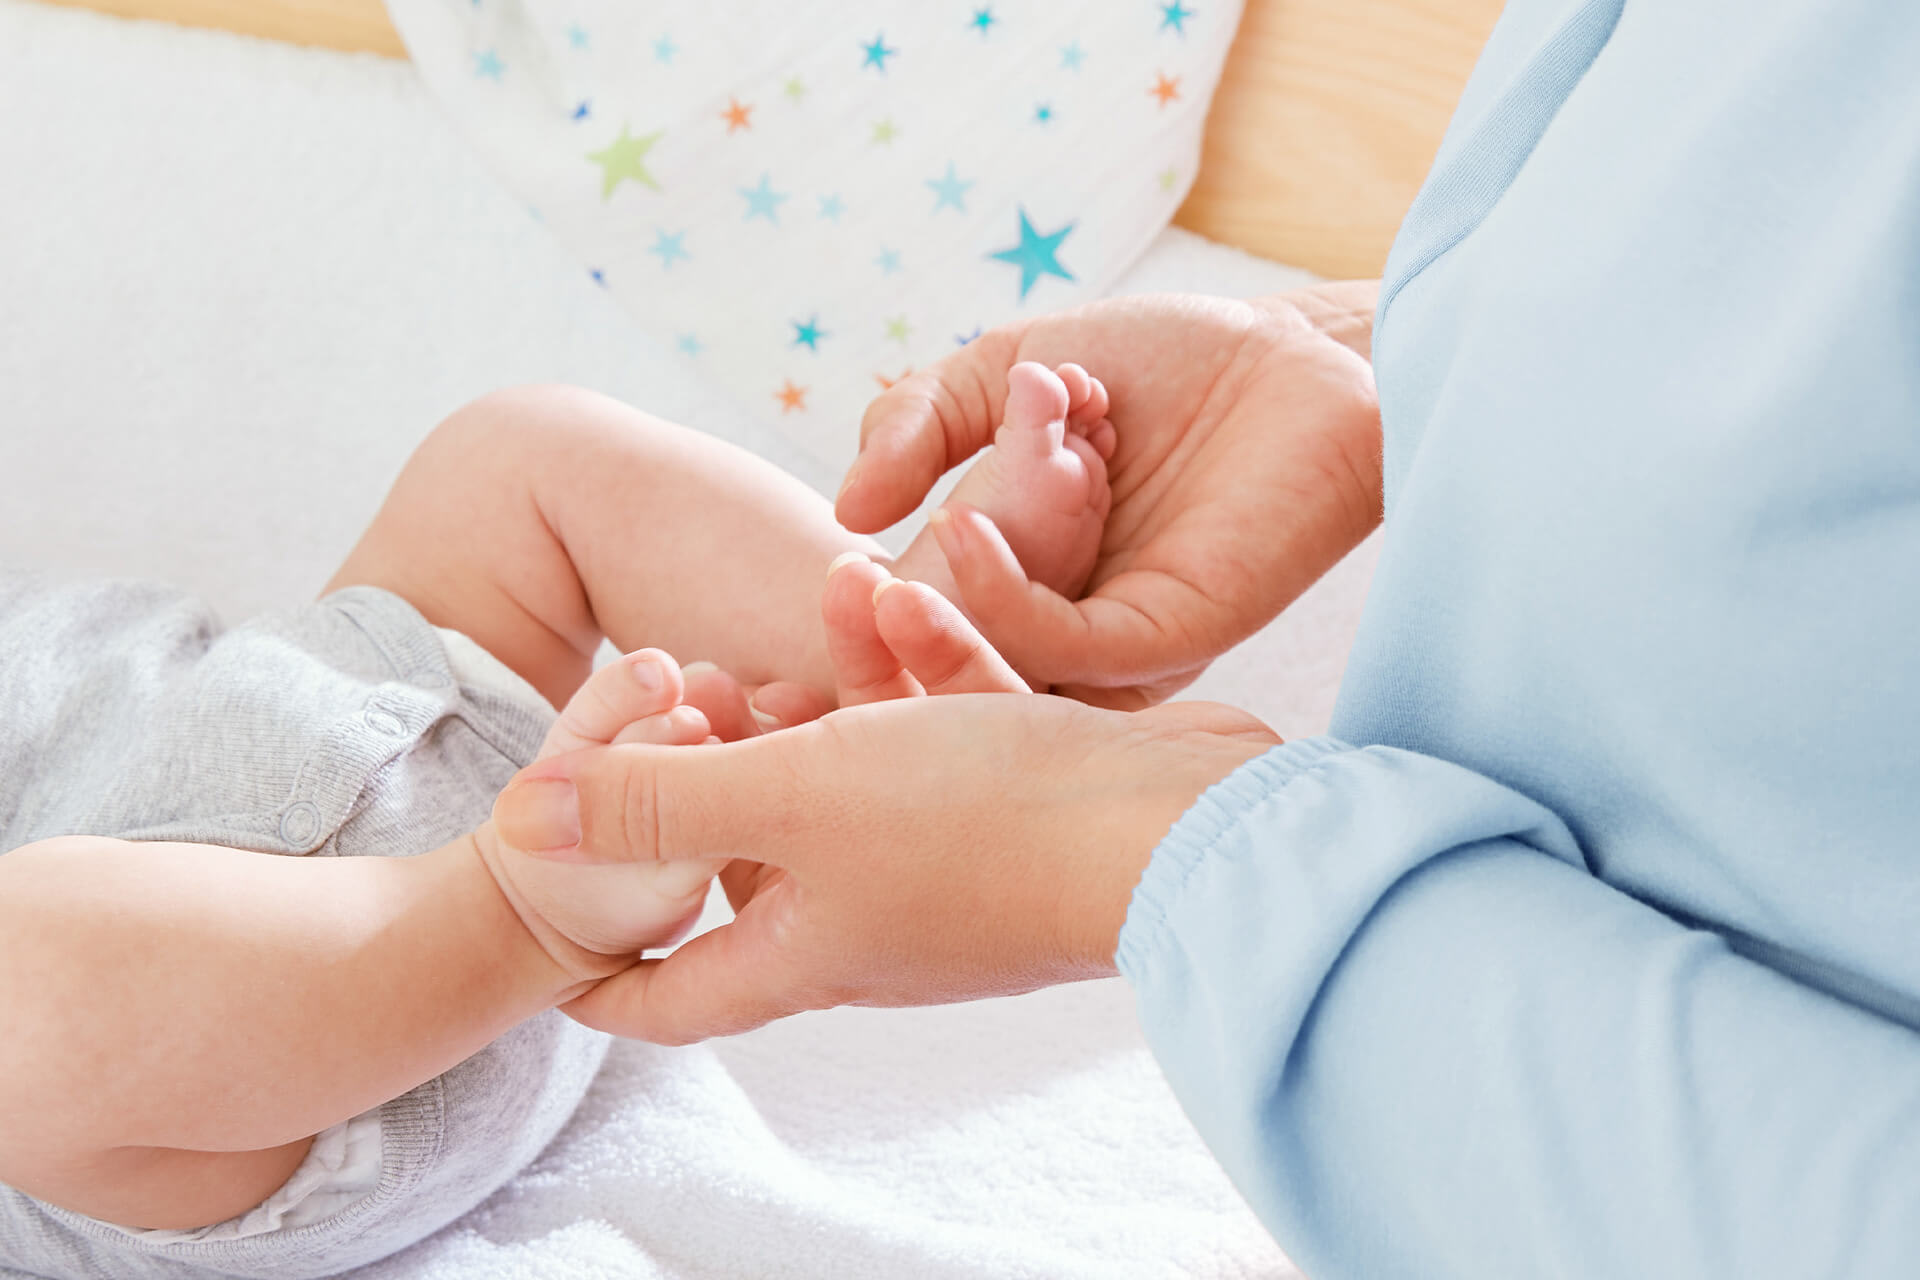 Räume | Krippe & Kindergarten | Wasch- und Wickelraum | Hygiene & Zubehör | Babyfüße werden mit Händen hochgehalten, um eine neue Windel anzulegen